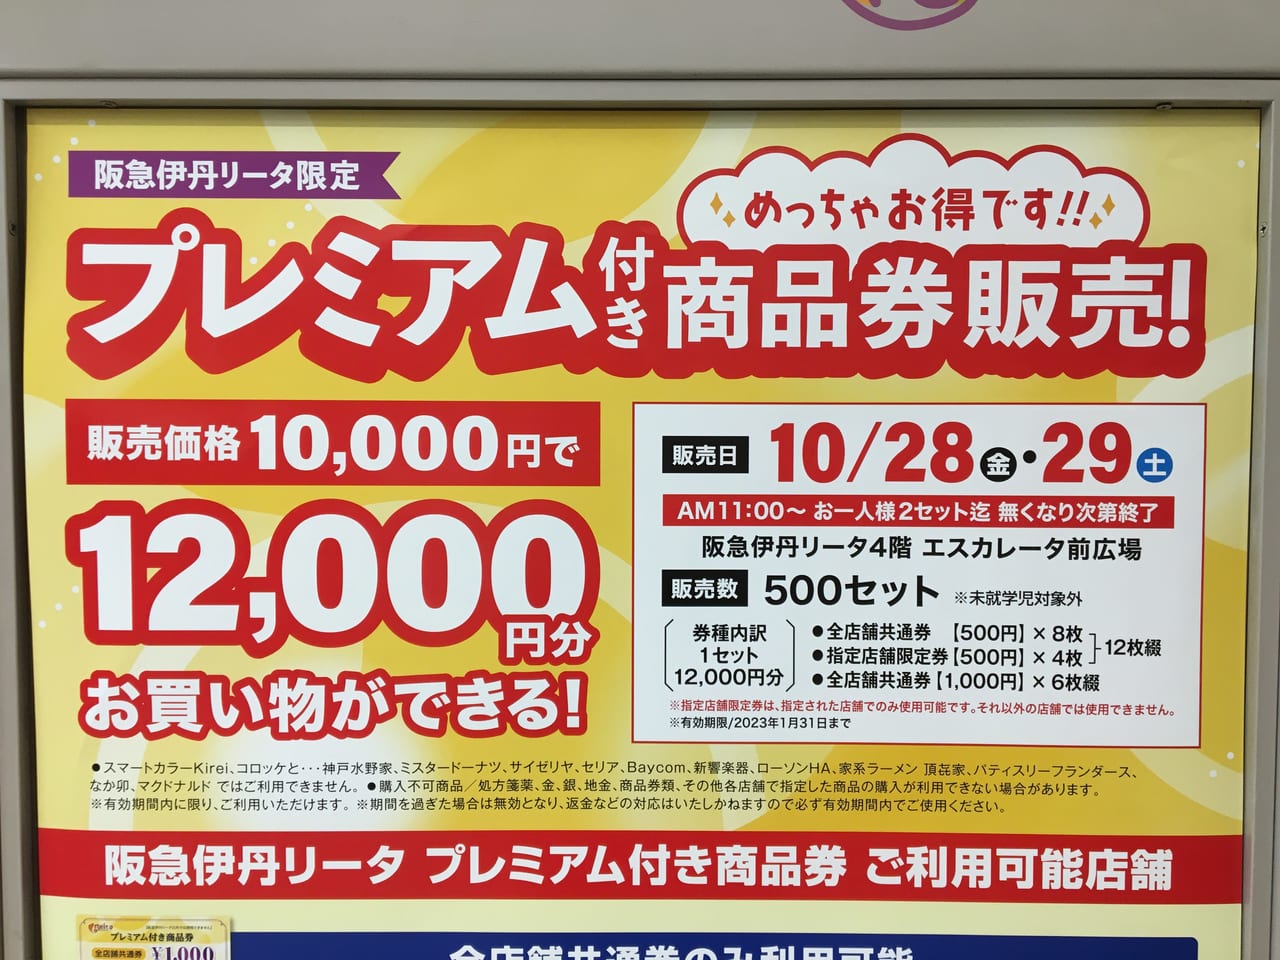 【伊丹市】今週末10/28(金)と29(土)の2日間、阪急伊丹リータ限定で、”めっちゃお得な商品券” が販売されます。 | 号外NET 伊丹市